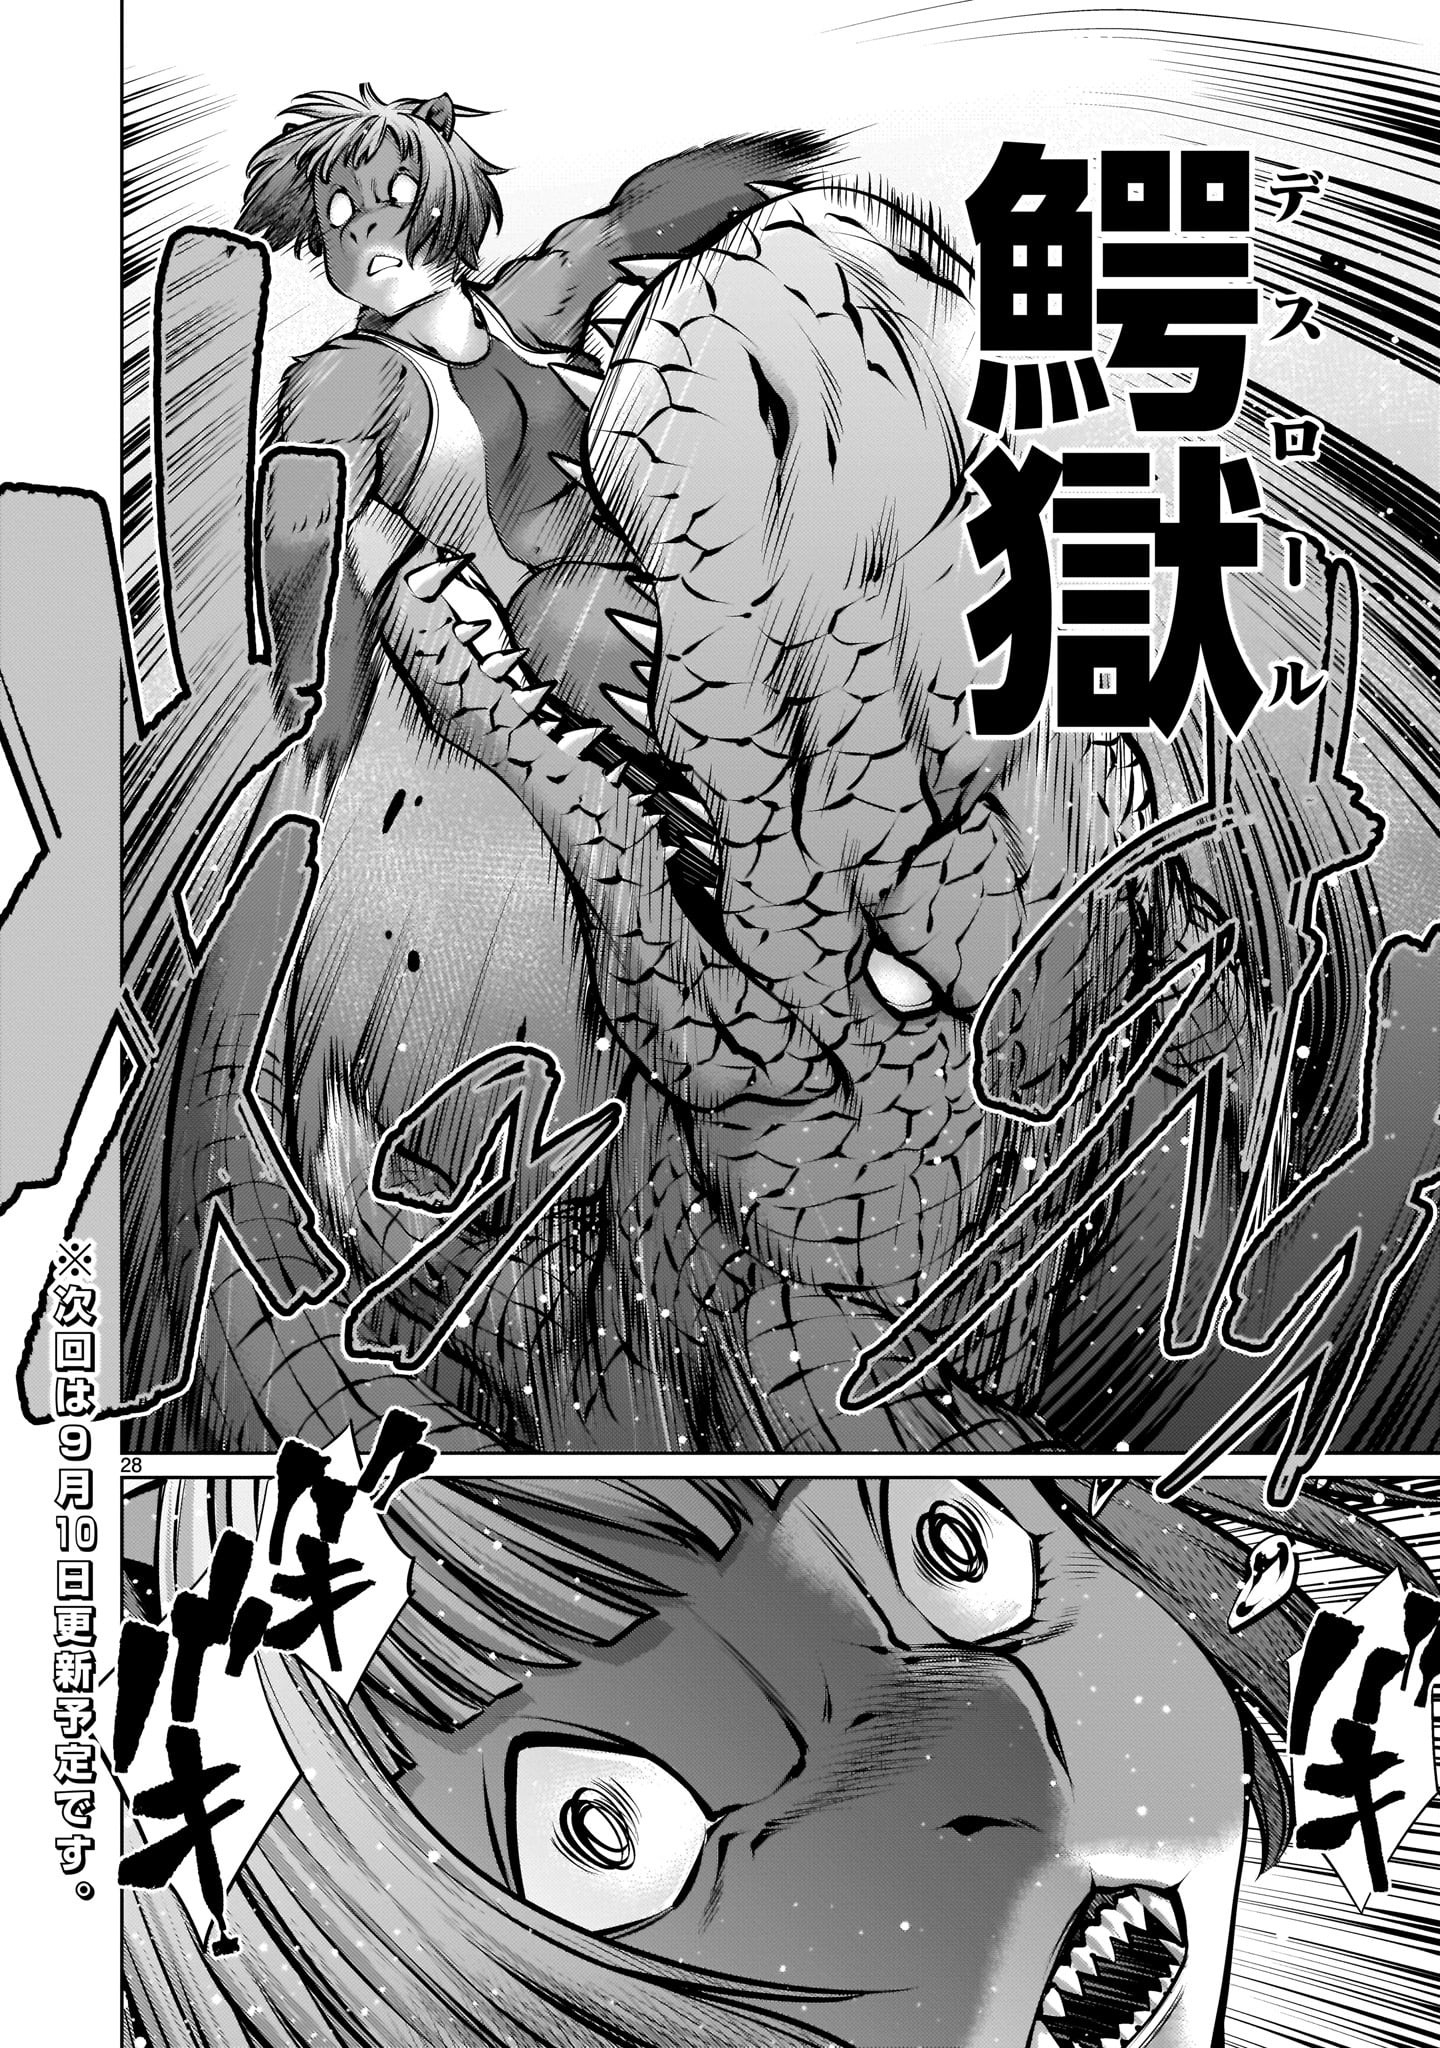 Killing Bites Manga Chapter 109